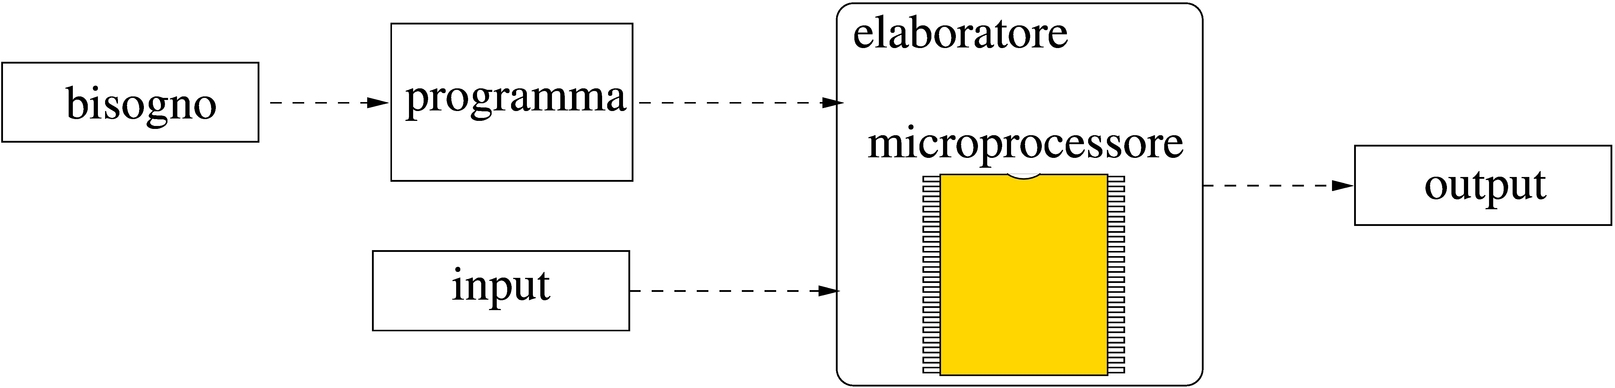 microprocessore nell'elaboratore